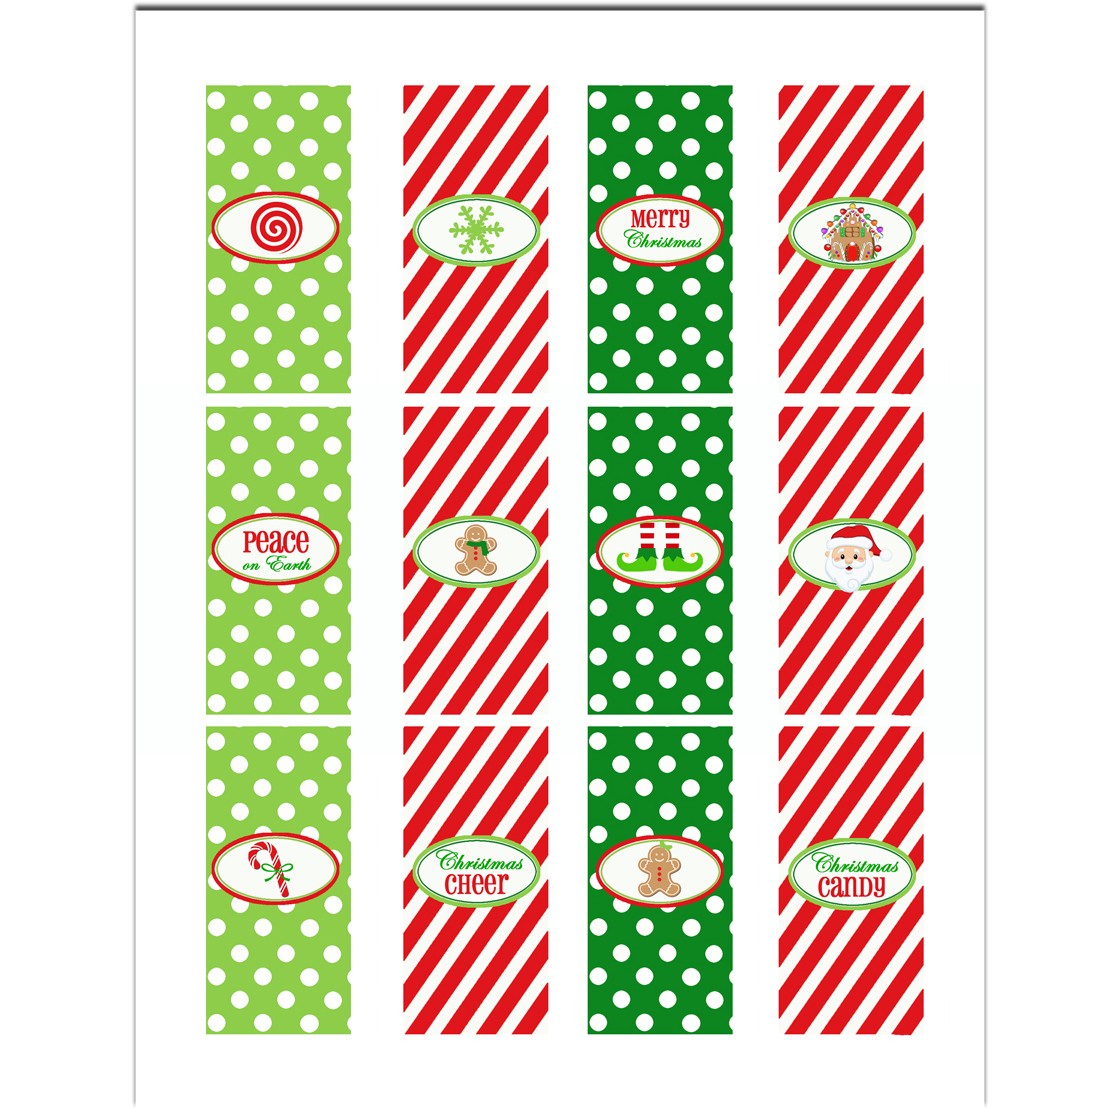 candy-bar-wrappers-christmas-free-printable-printable-templates